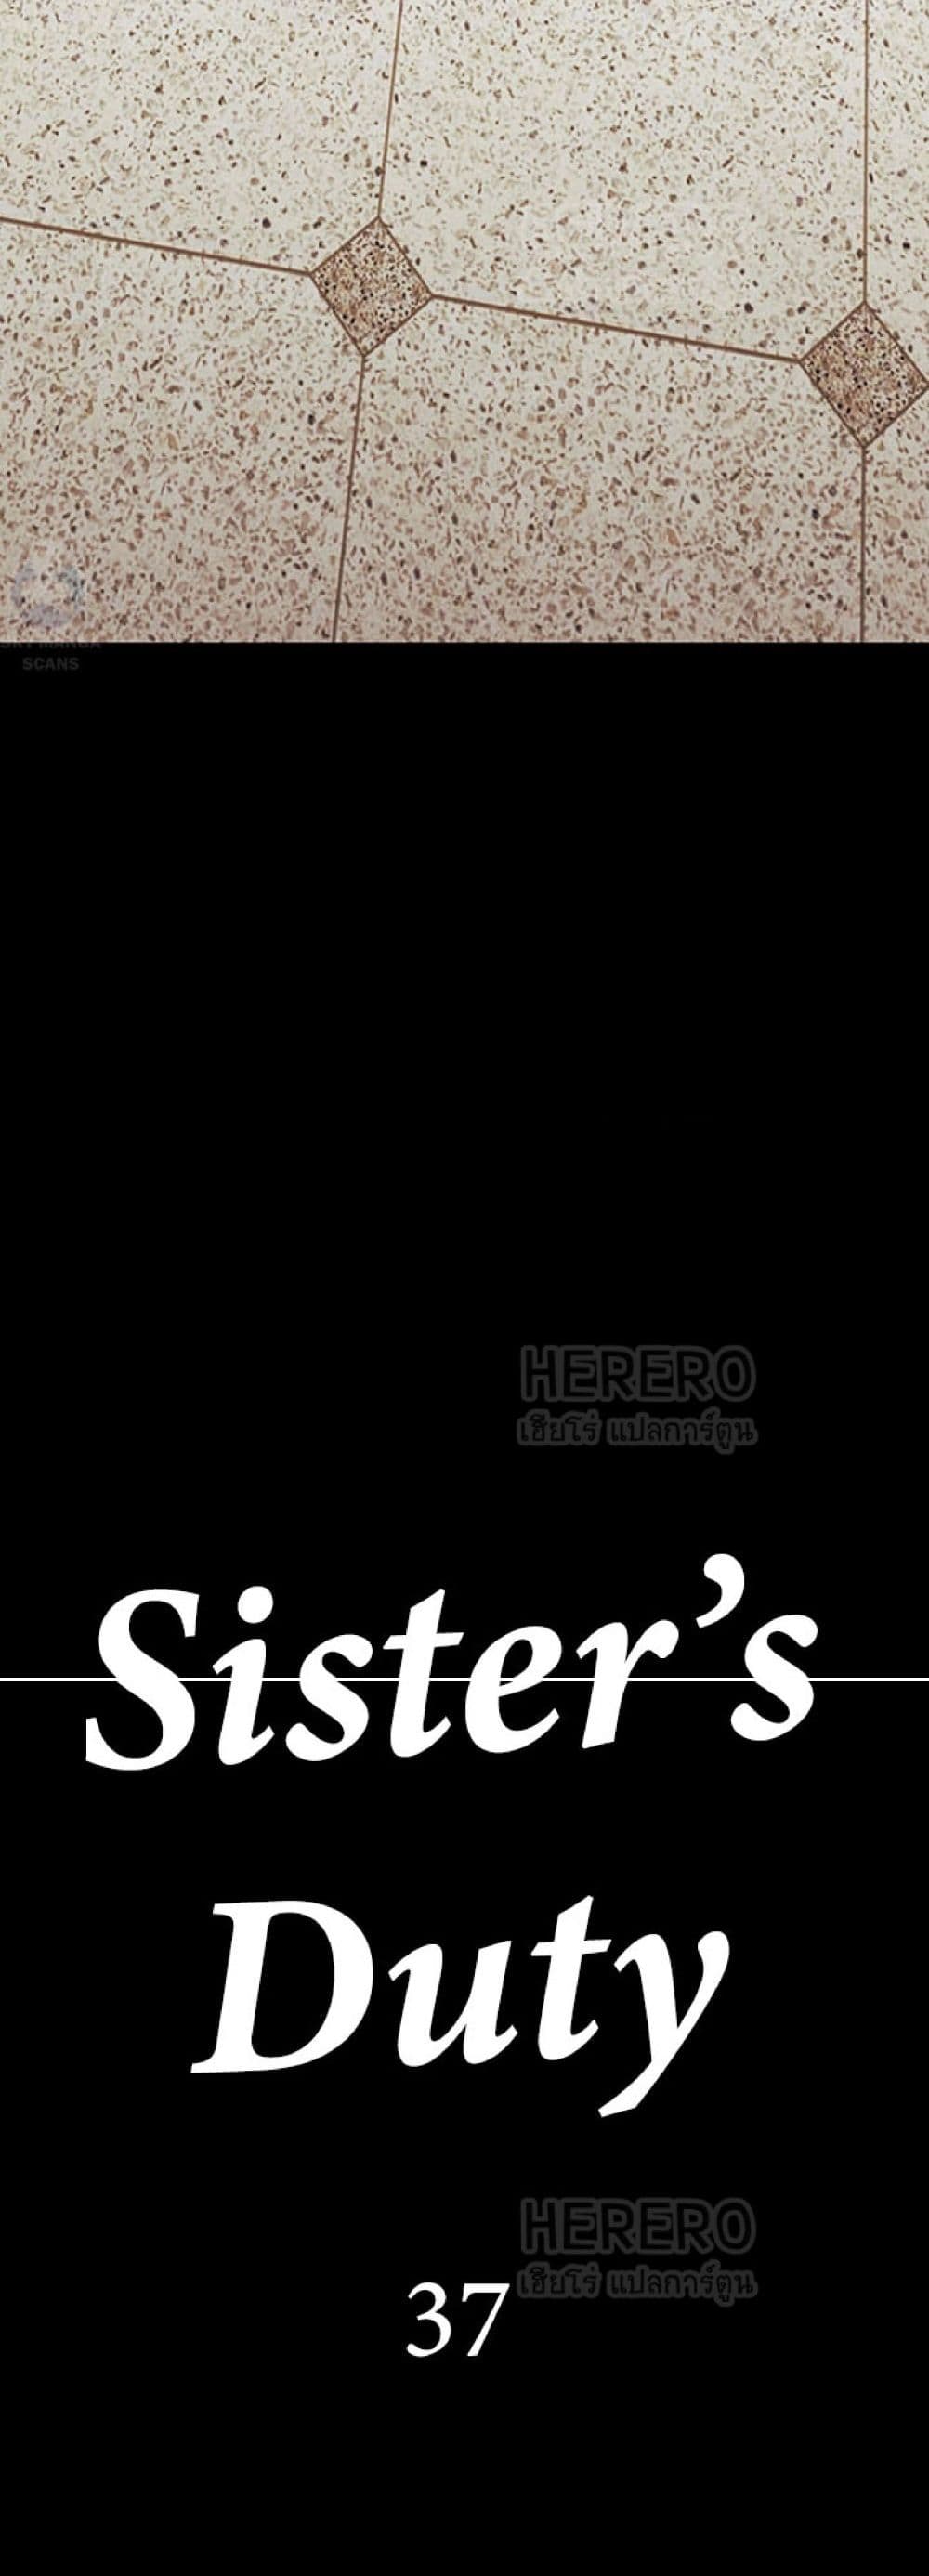 Sister's Duty 37 (6)